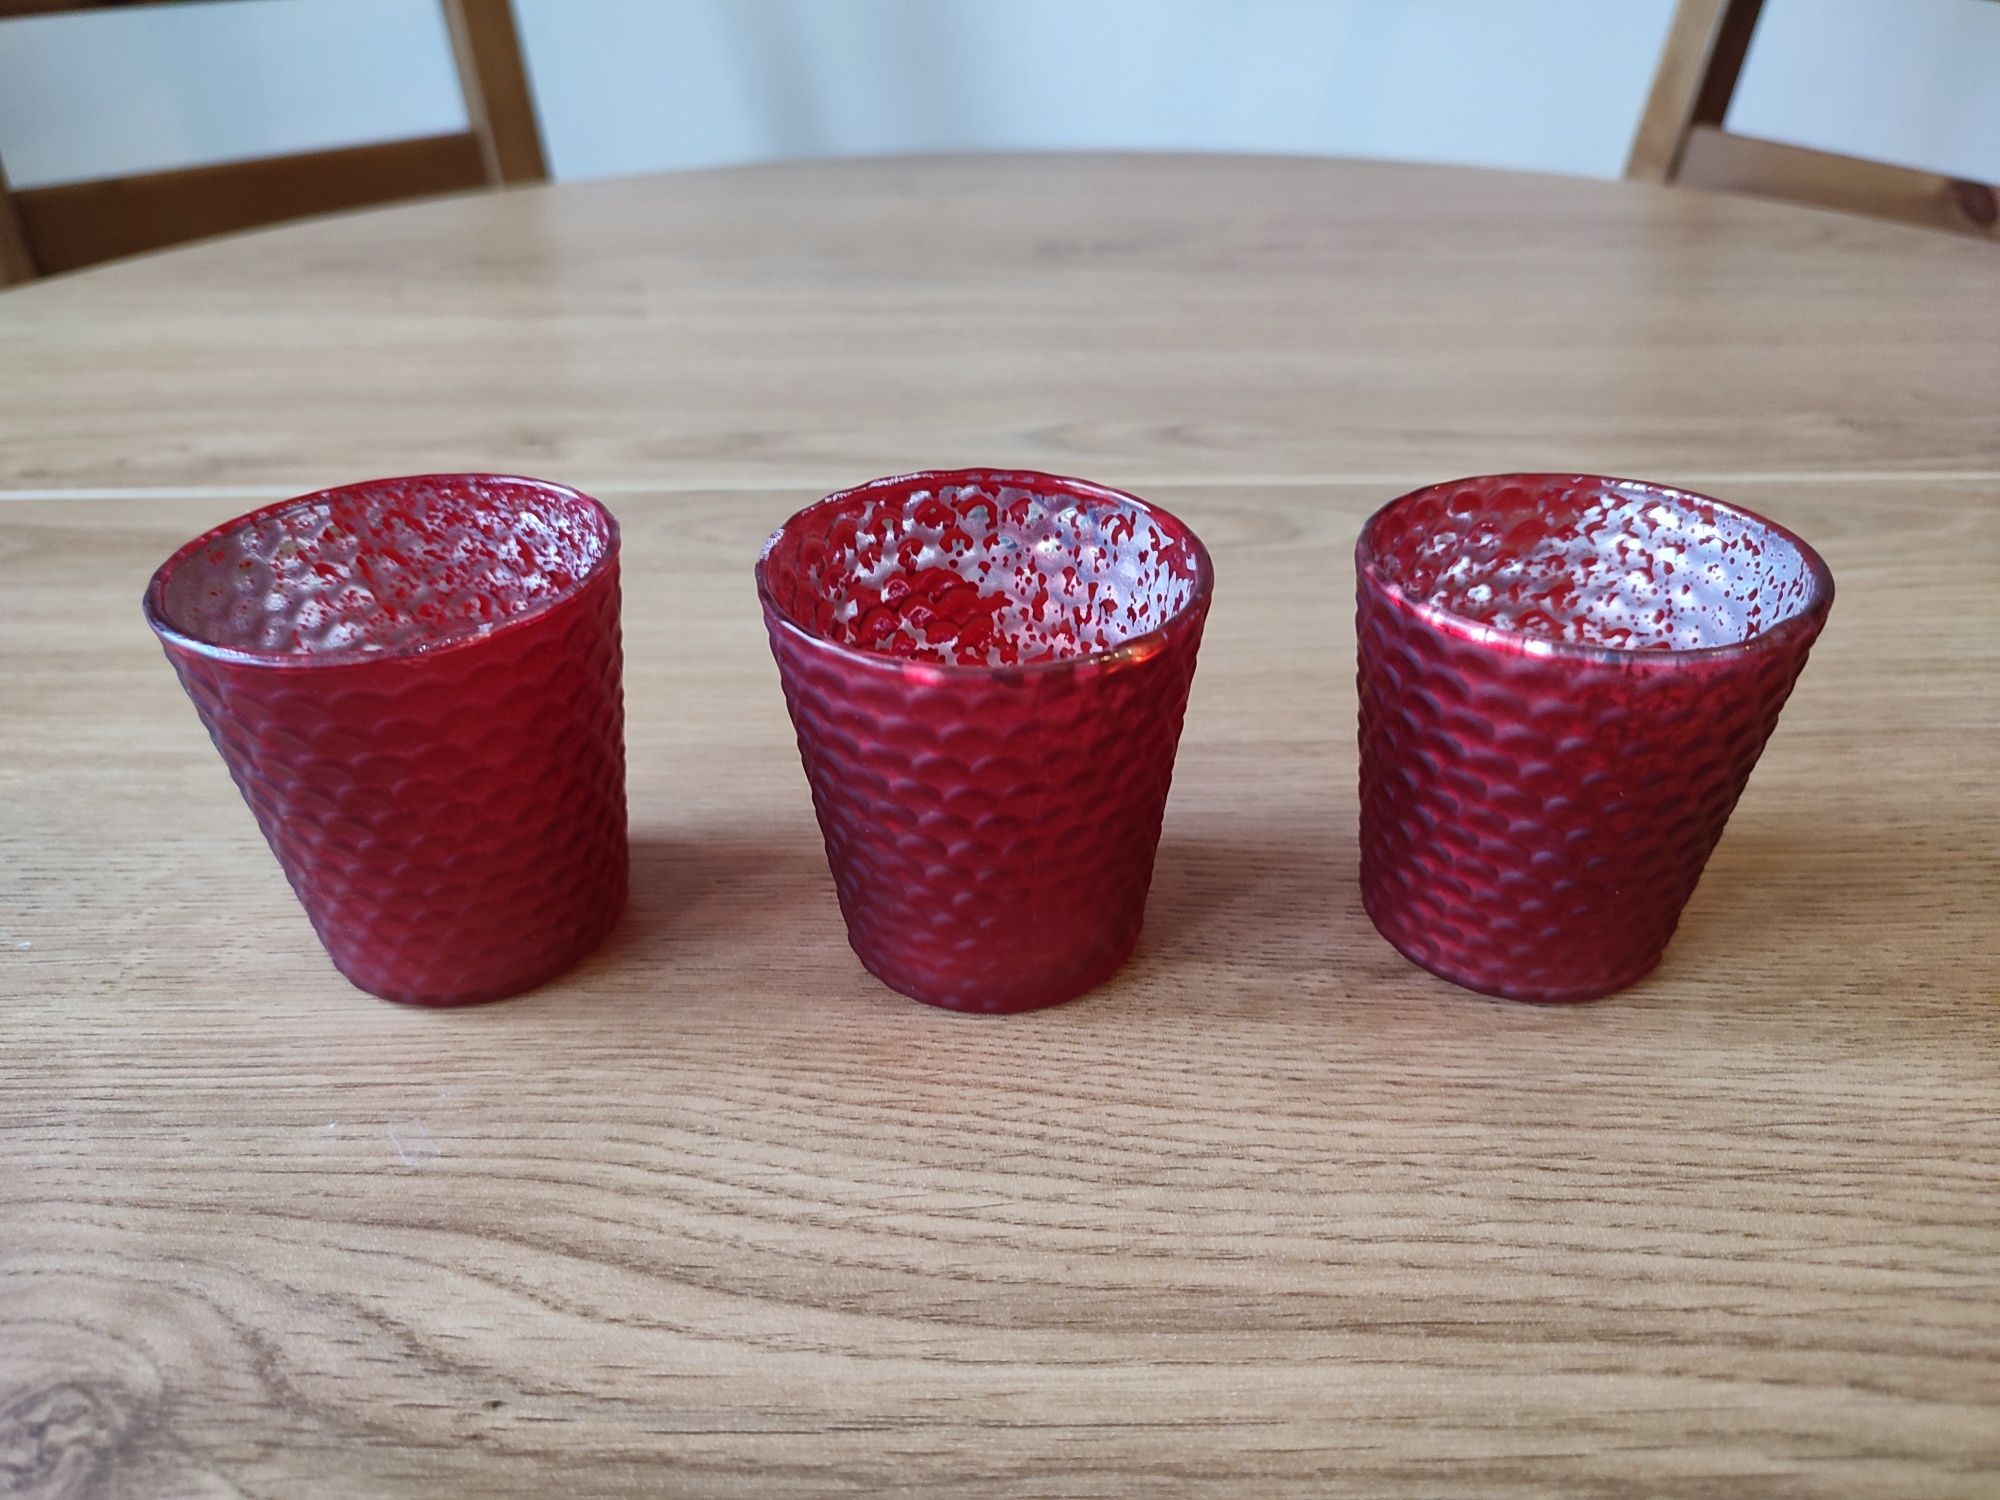 Nowe świeczniki czerwone nakrapiane na tealight-y wys. 6cm średn. 6cm